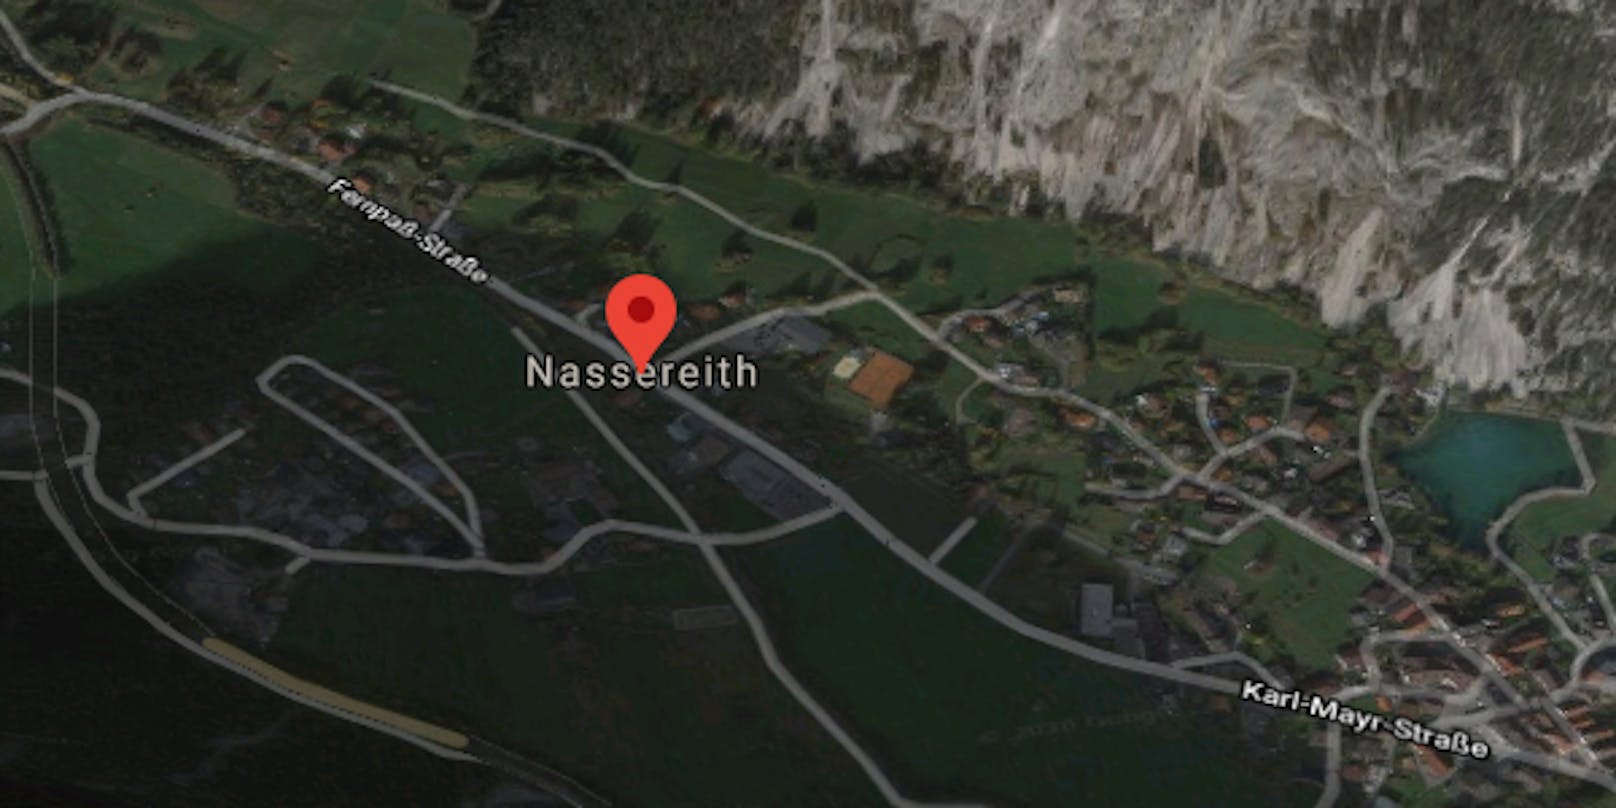 Der Fahrzeugraub geschah in Nassereith (Bezirk Imst).